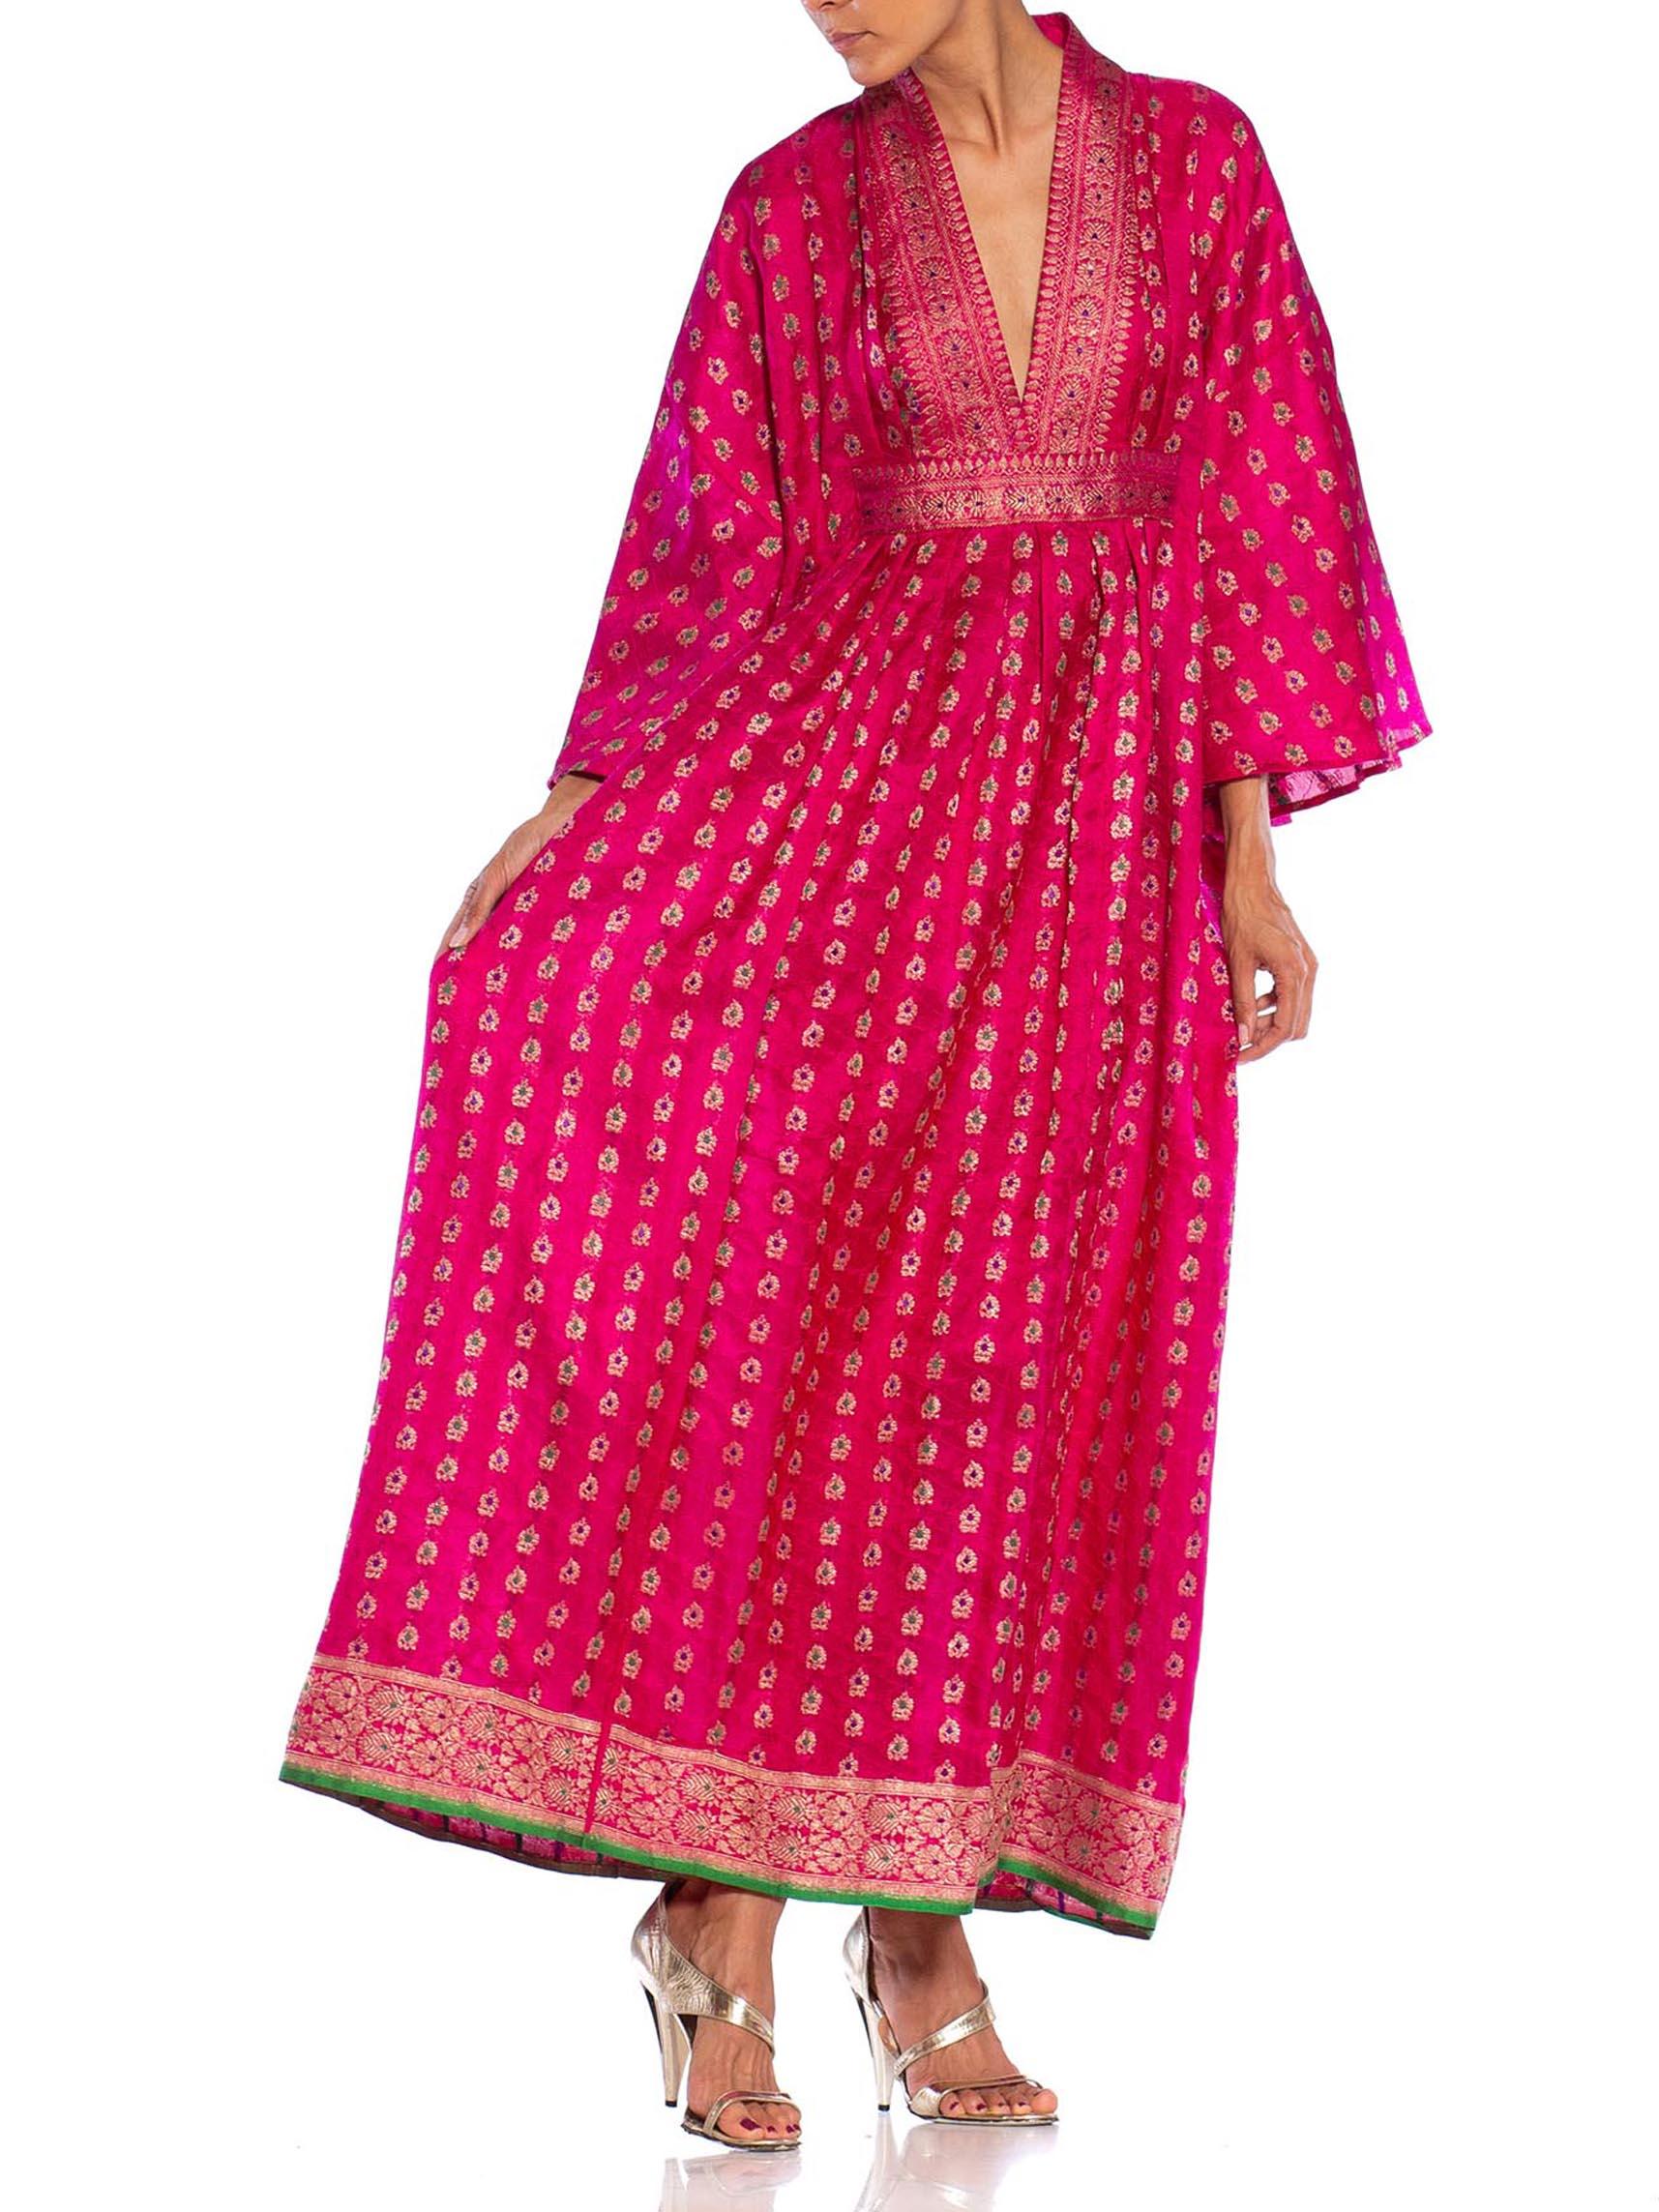 MORPHEW COLLECTION Pink Metallic Silk Kaftan Made From Vintage Saris 2